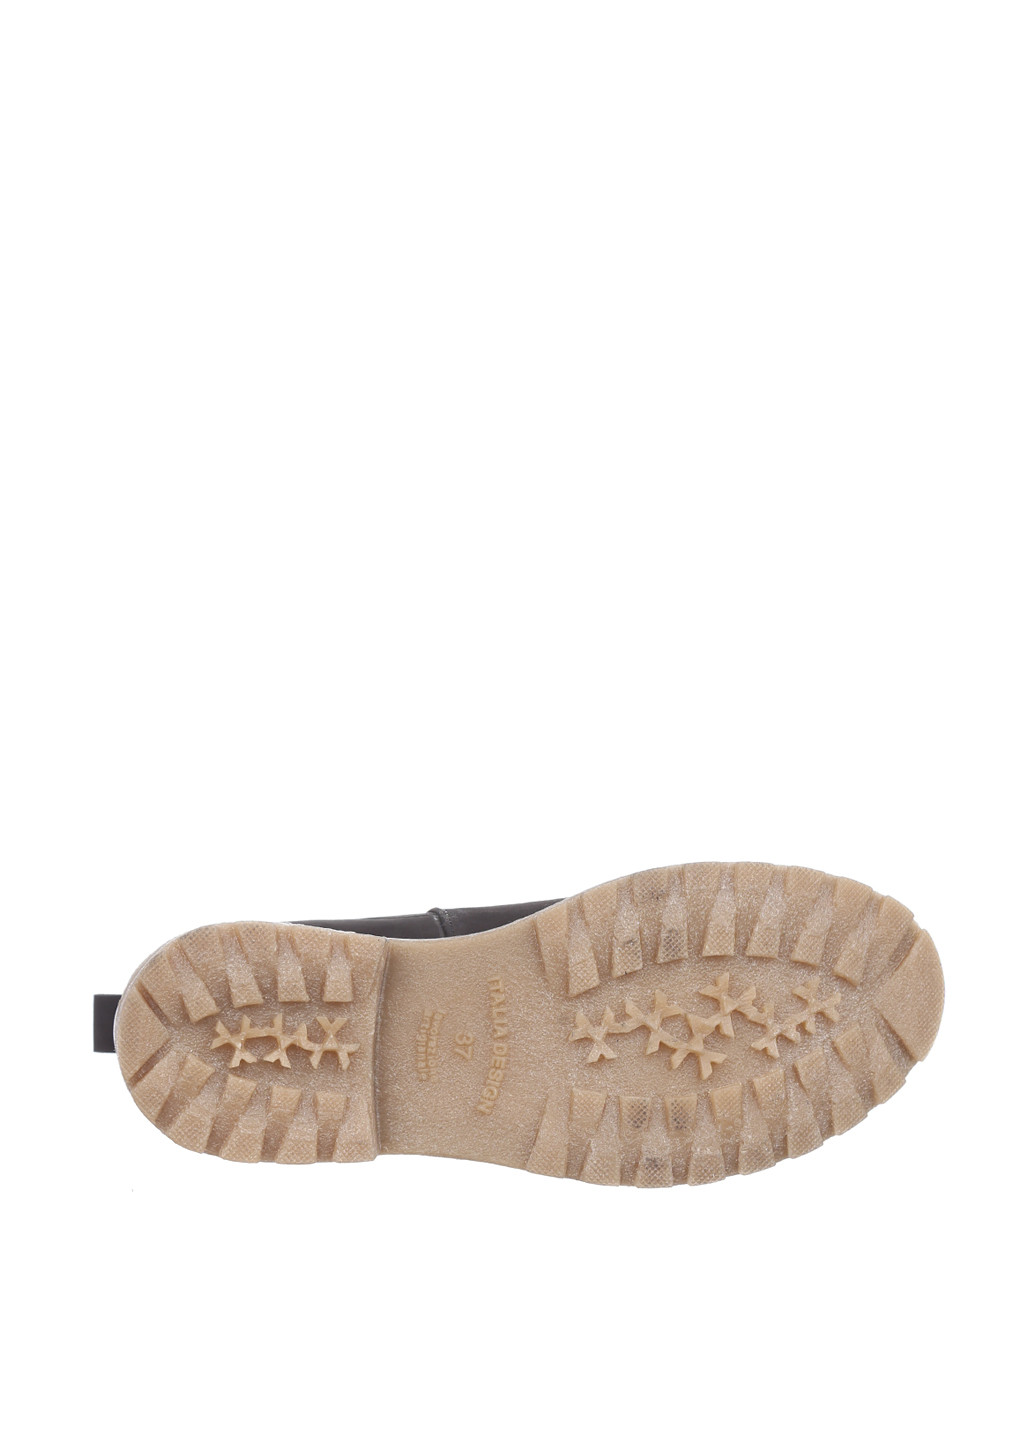 Осенние ботинки челси Maria Tucci без декора из искусственной кожи